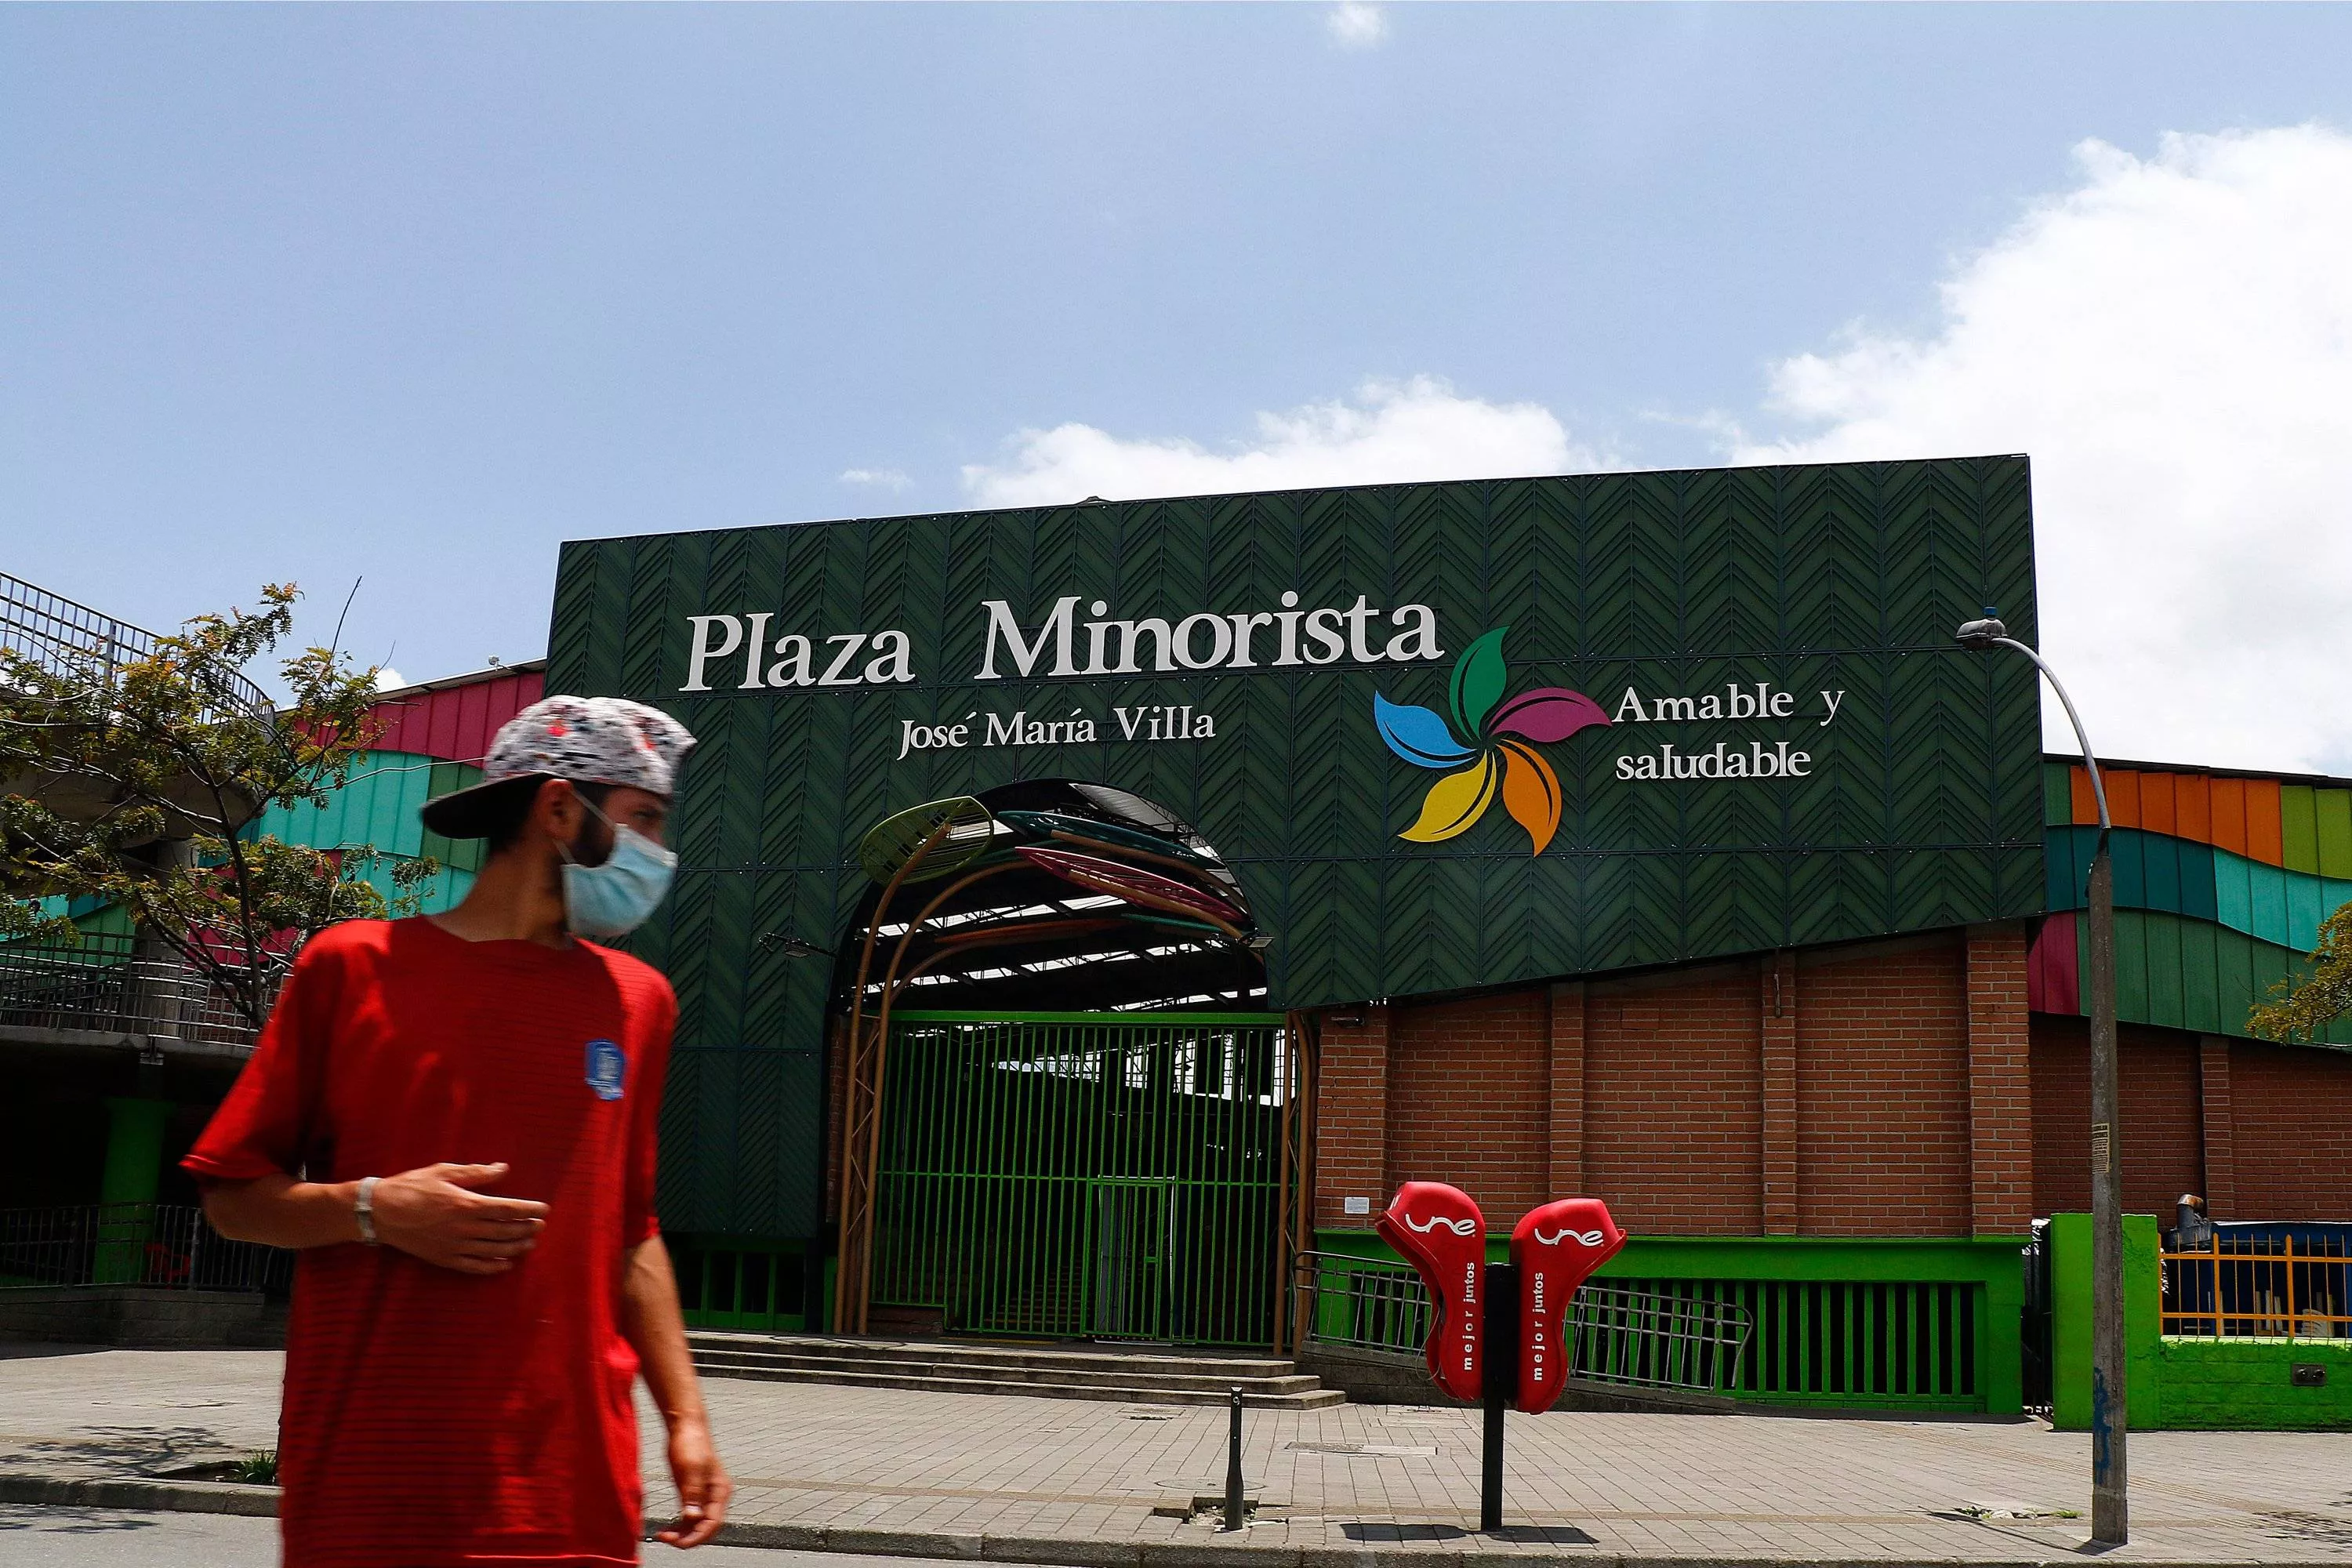 Jose Maria Villa Retail Square in Colombia, South America | Architecture - Rated 3.8